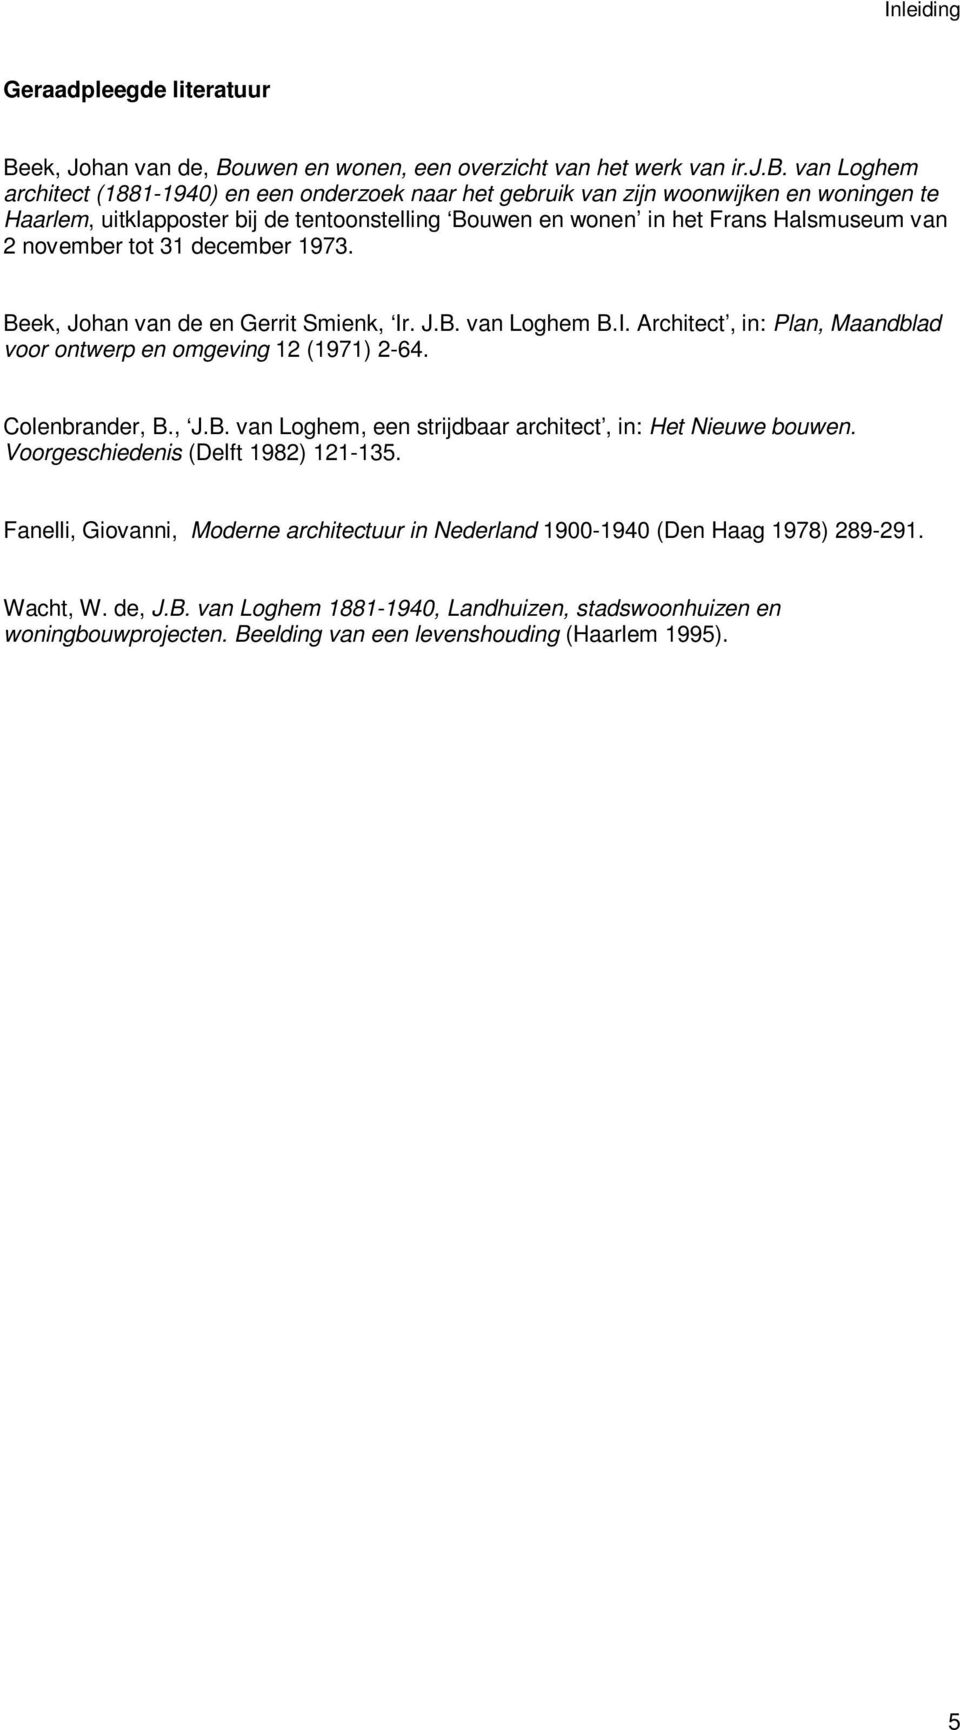 november tot 31 december 1973. Beek, Johan van de en Gerrit Smienk, Ir. J.B. van Loghem B.I. Architect, in: Plan, Maandblad voor ontwerp en omgeving 12 (1971) 2-64. Colenbrander, B., J.B. van Loghem, een strijdbaar architect, in: Het Nieuwe bouwen.